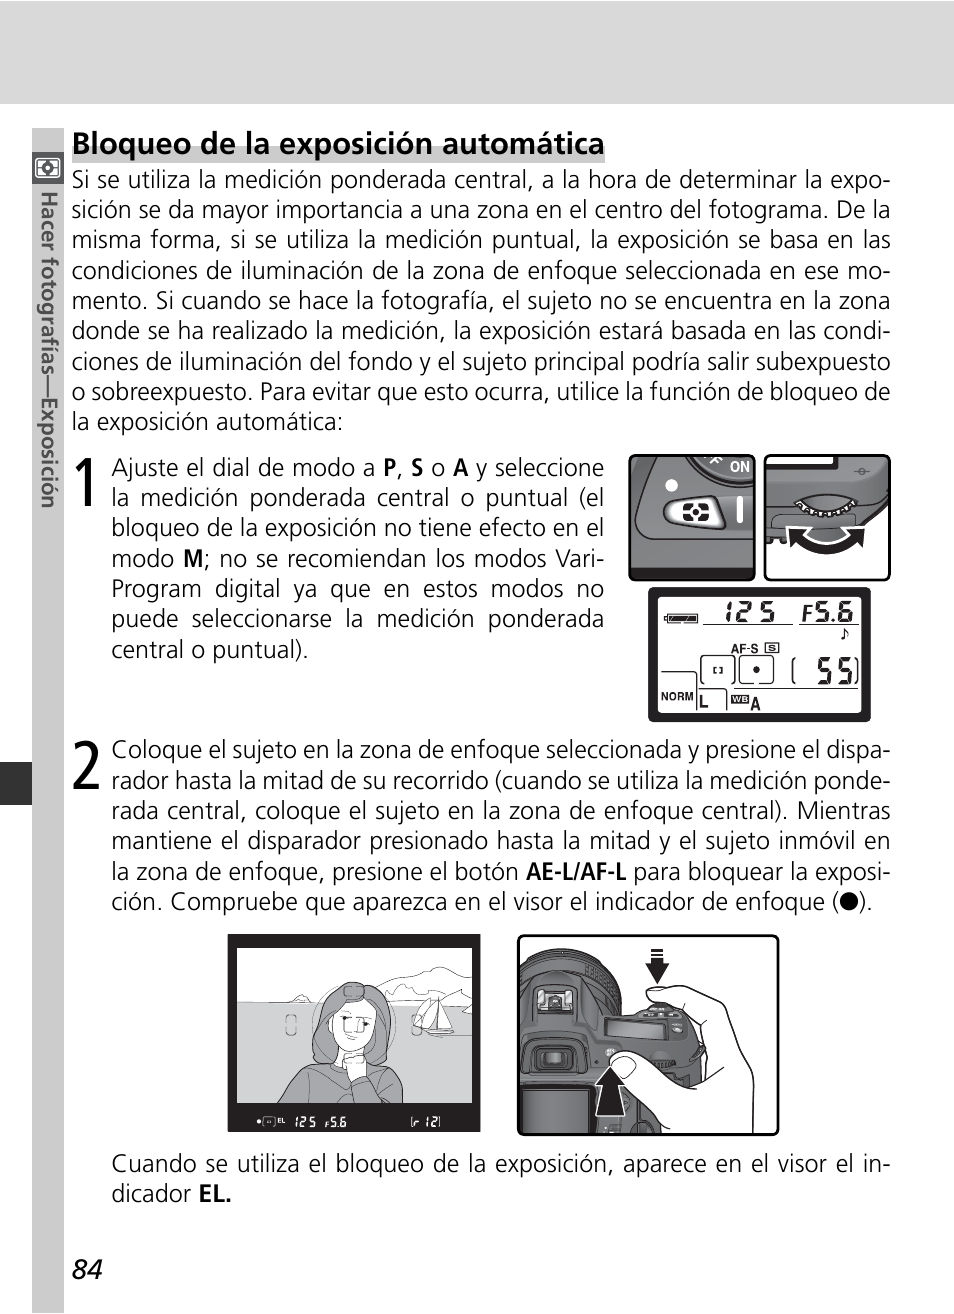 Bloqueo de la exposición automática | Nikon D70S Manual del usuario | Página 94 / 219